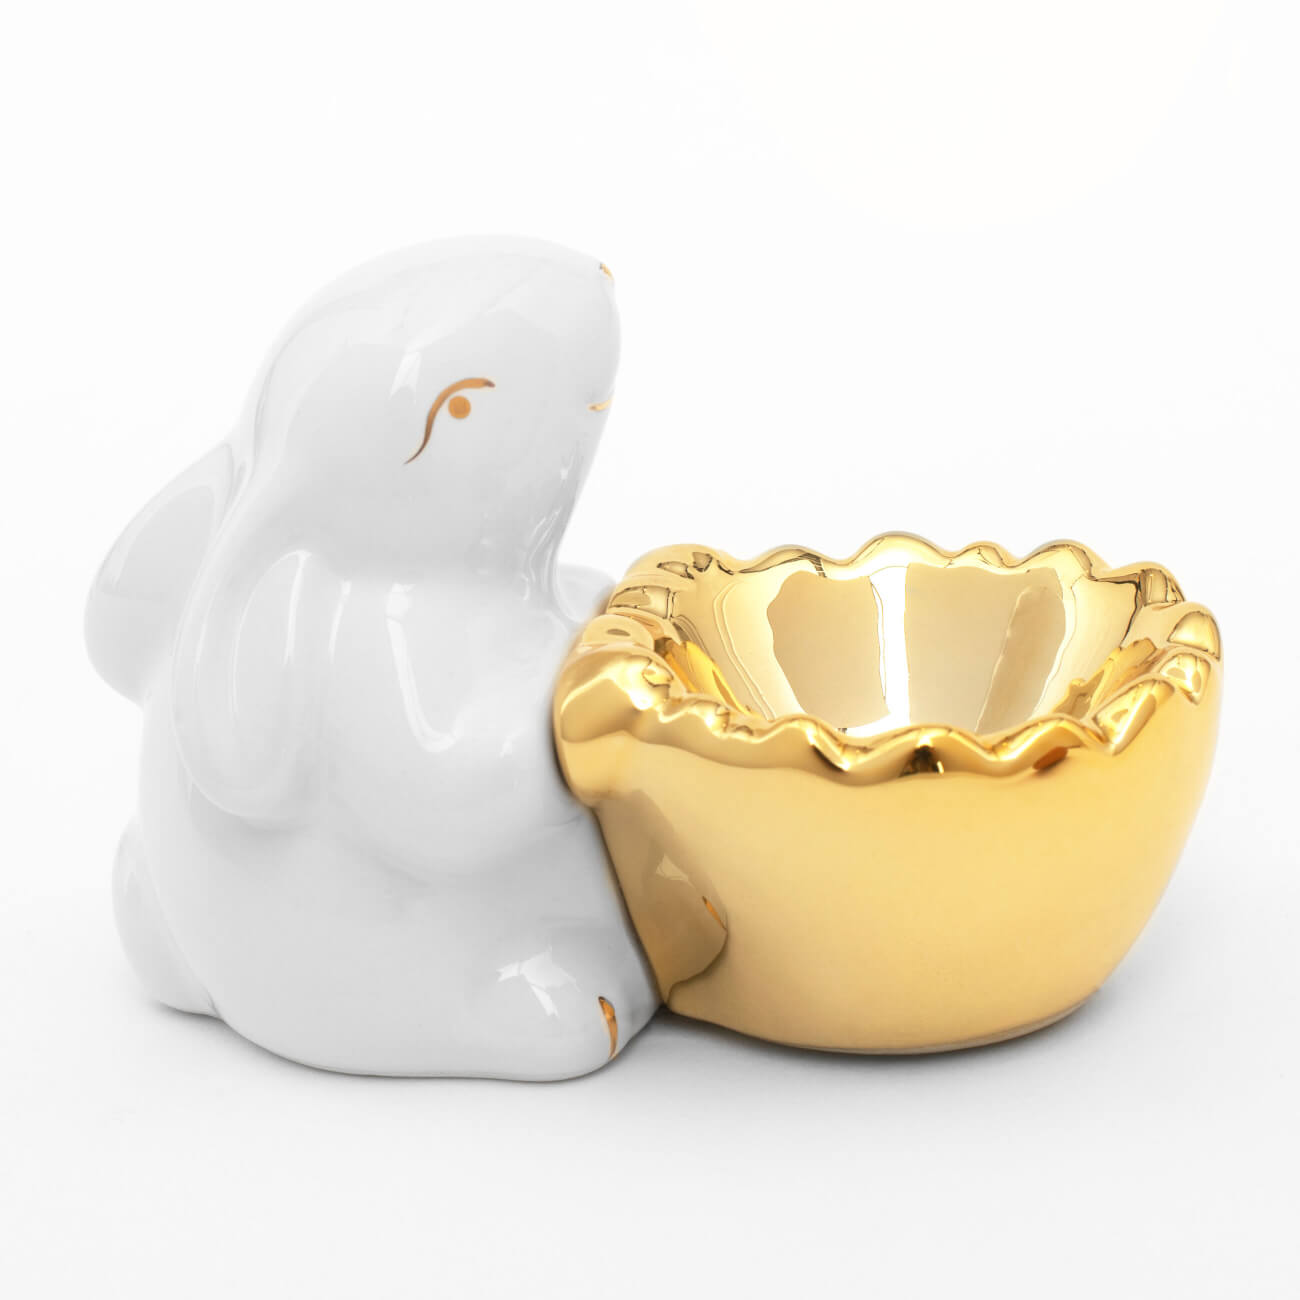 Подставка для яйца, 11 см, керамика, бело-золотистая, Кролик со скорлупой, Easter gold изображение № 1